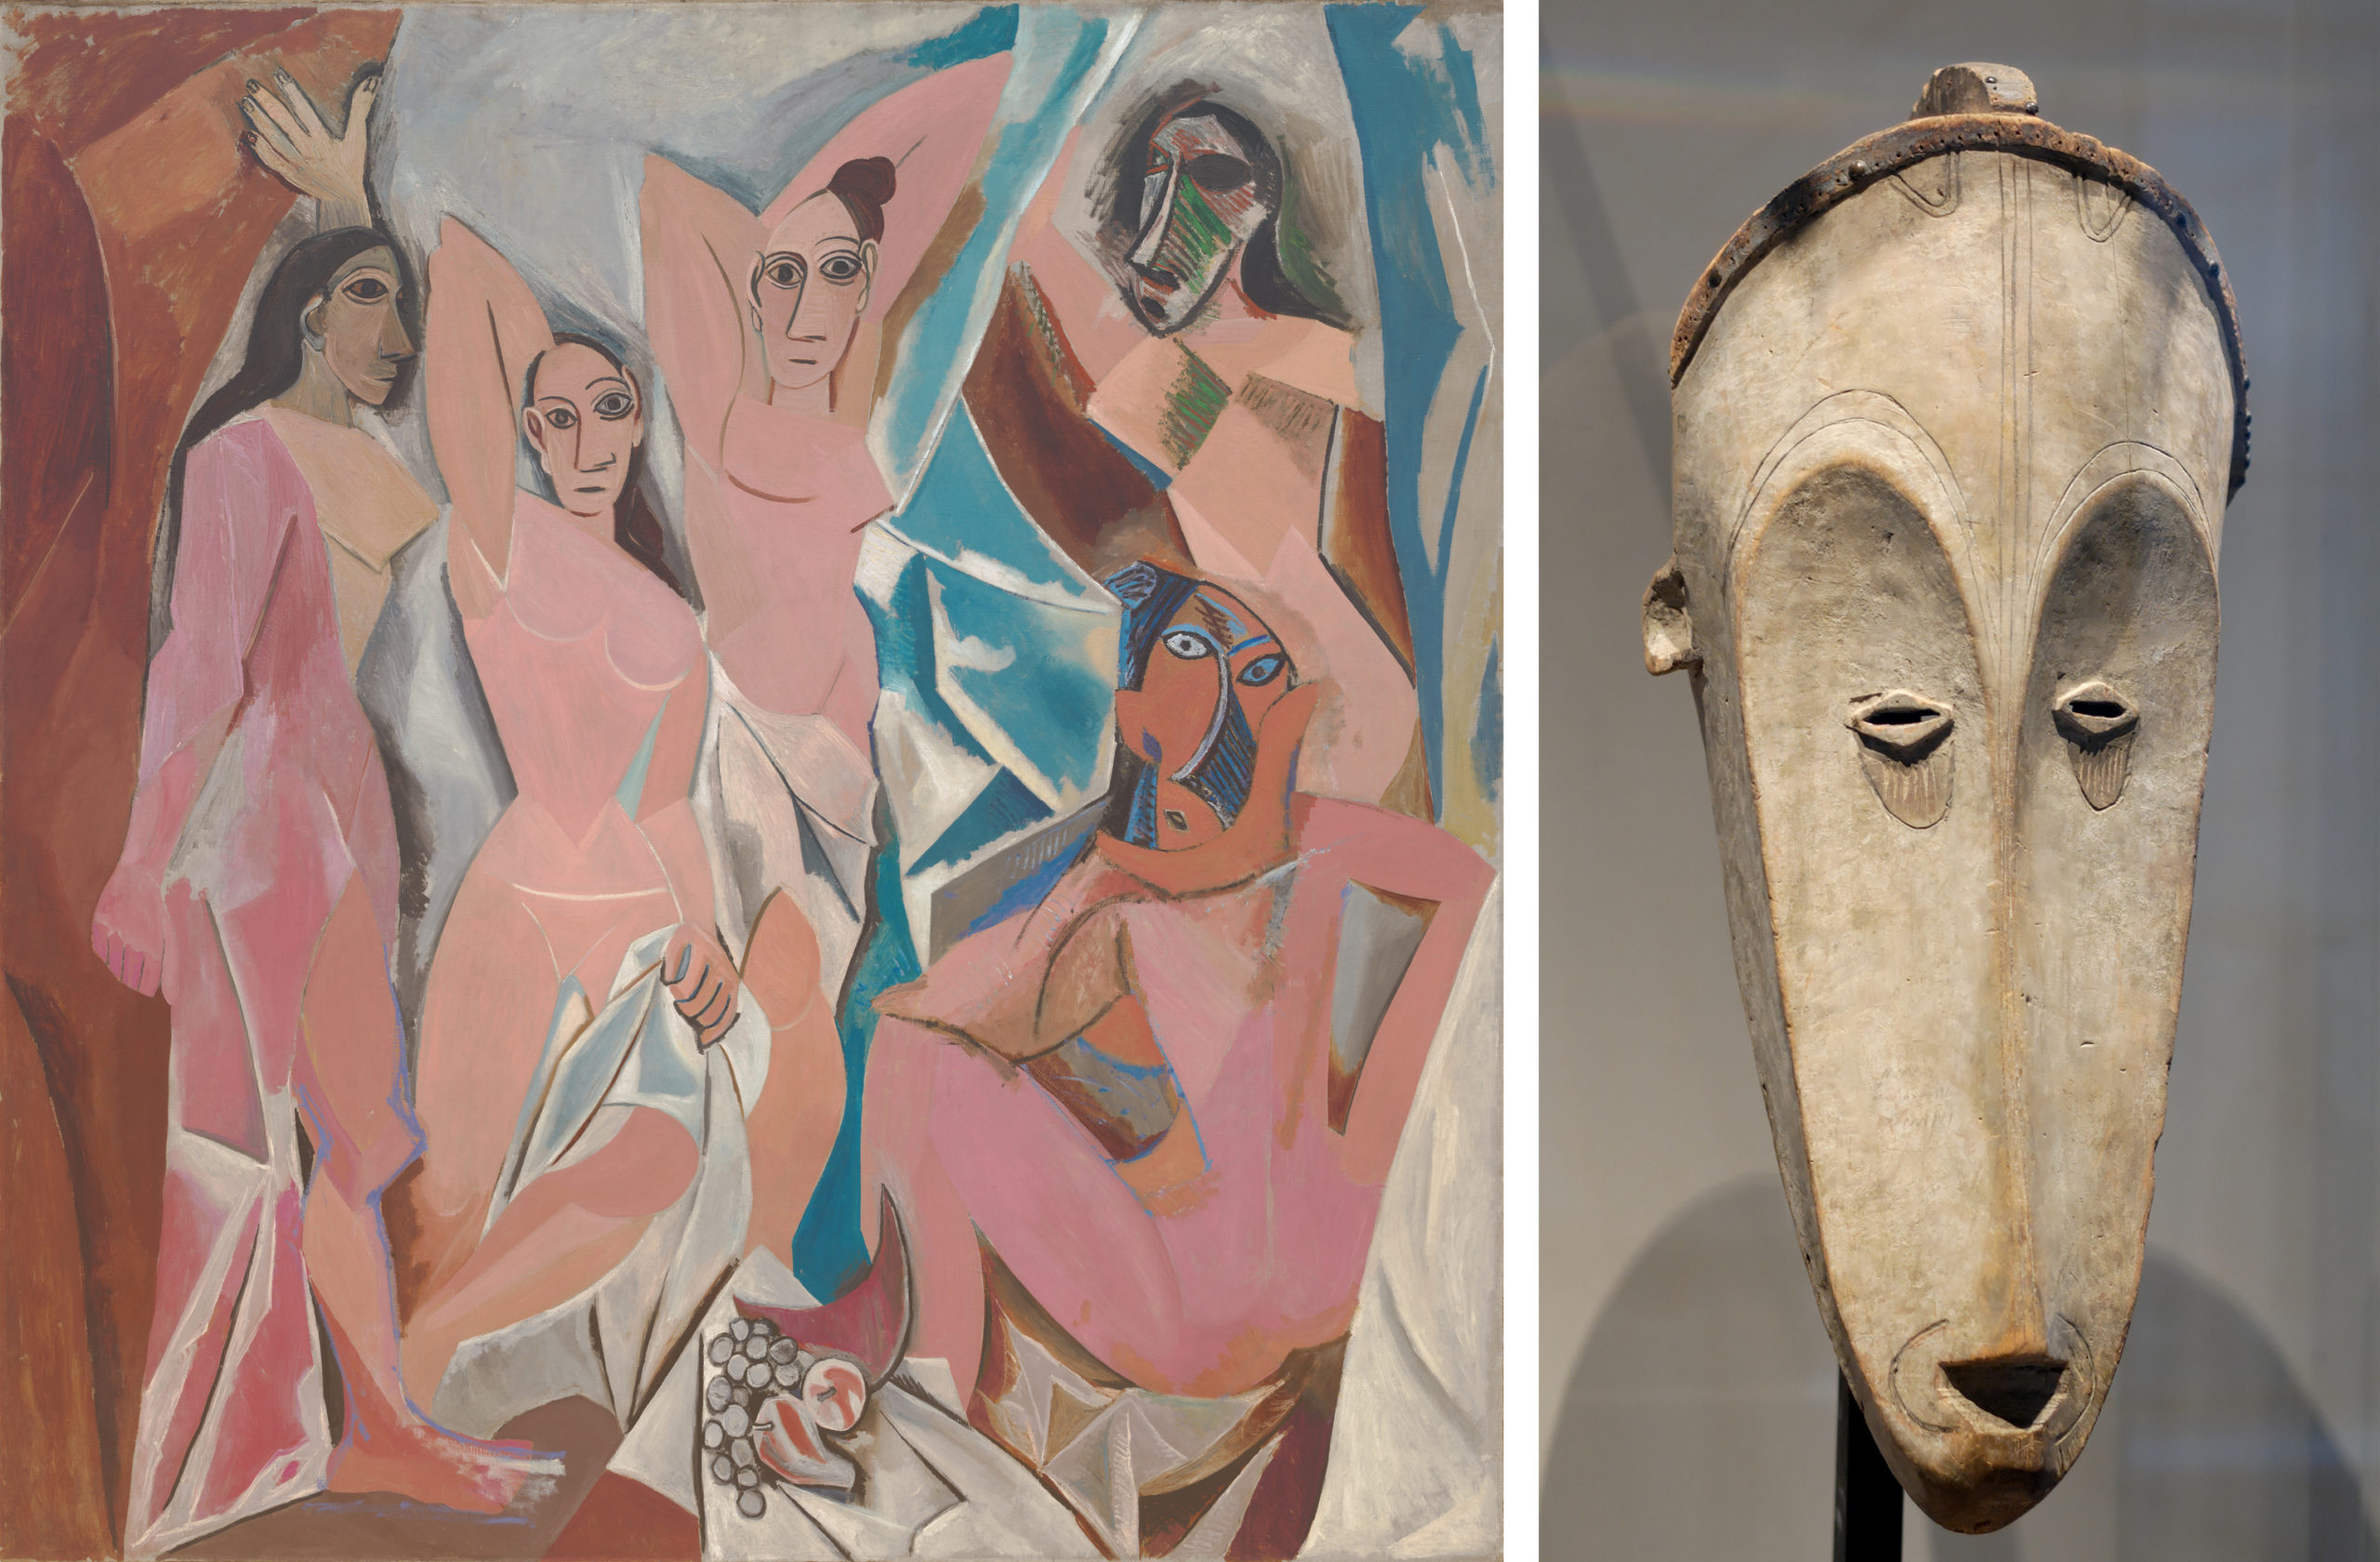 Left: Pablo Picasso, Les Demoiselles d’Avignon, 1907 (MoMA); Right: Fang mask, Gabon, 19th century (Musée du Louvre)